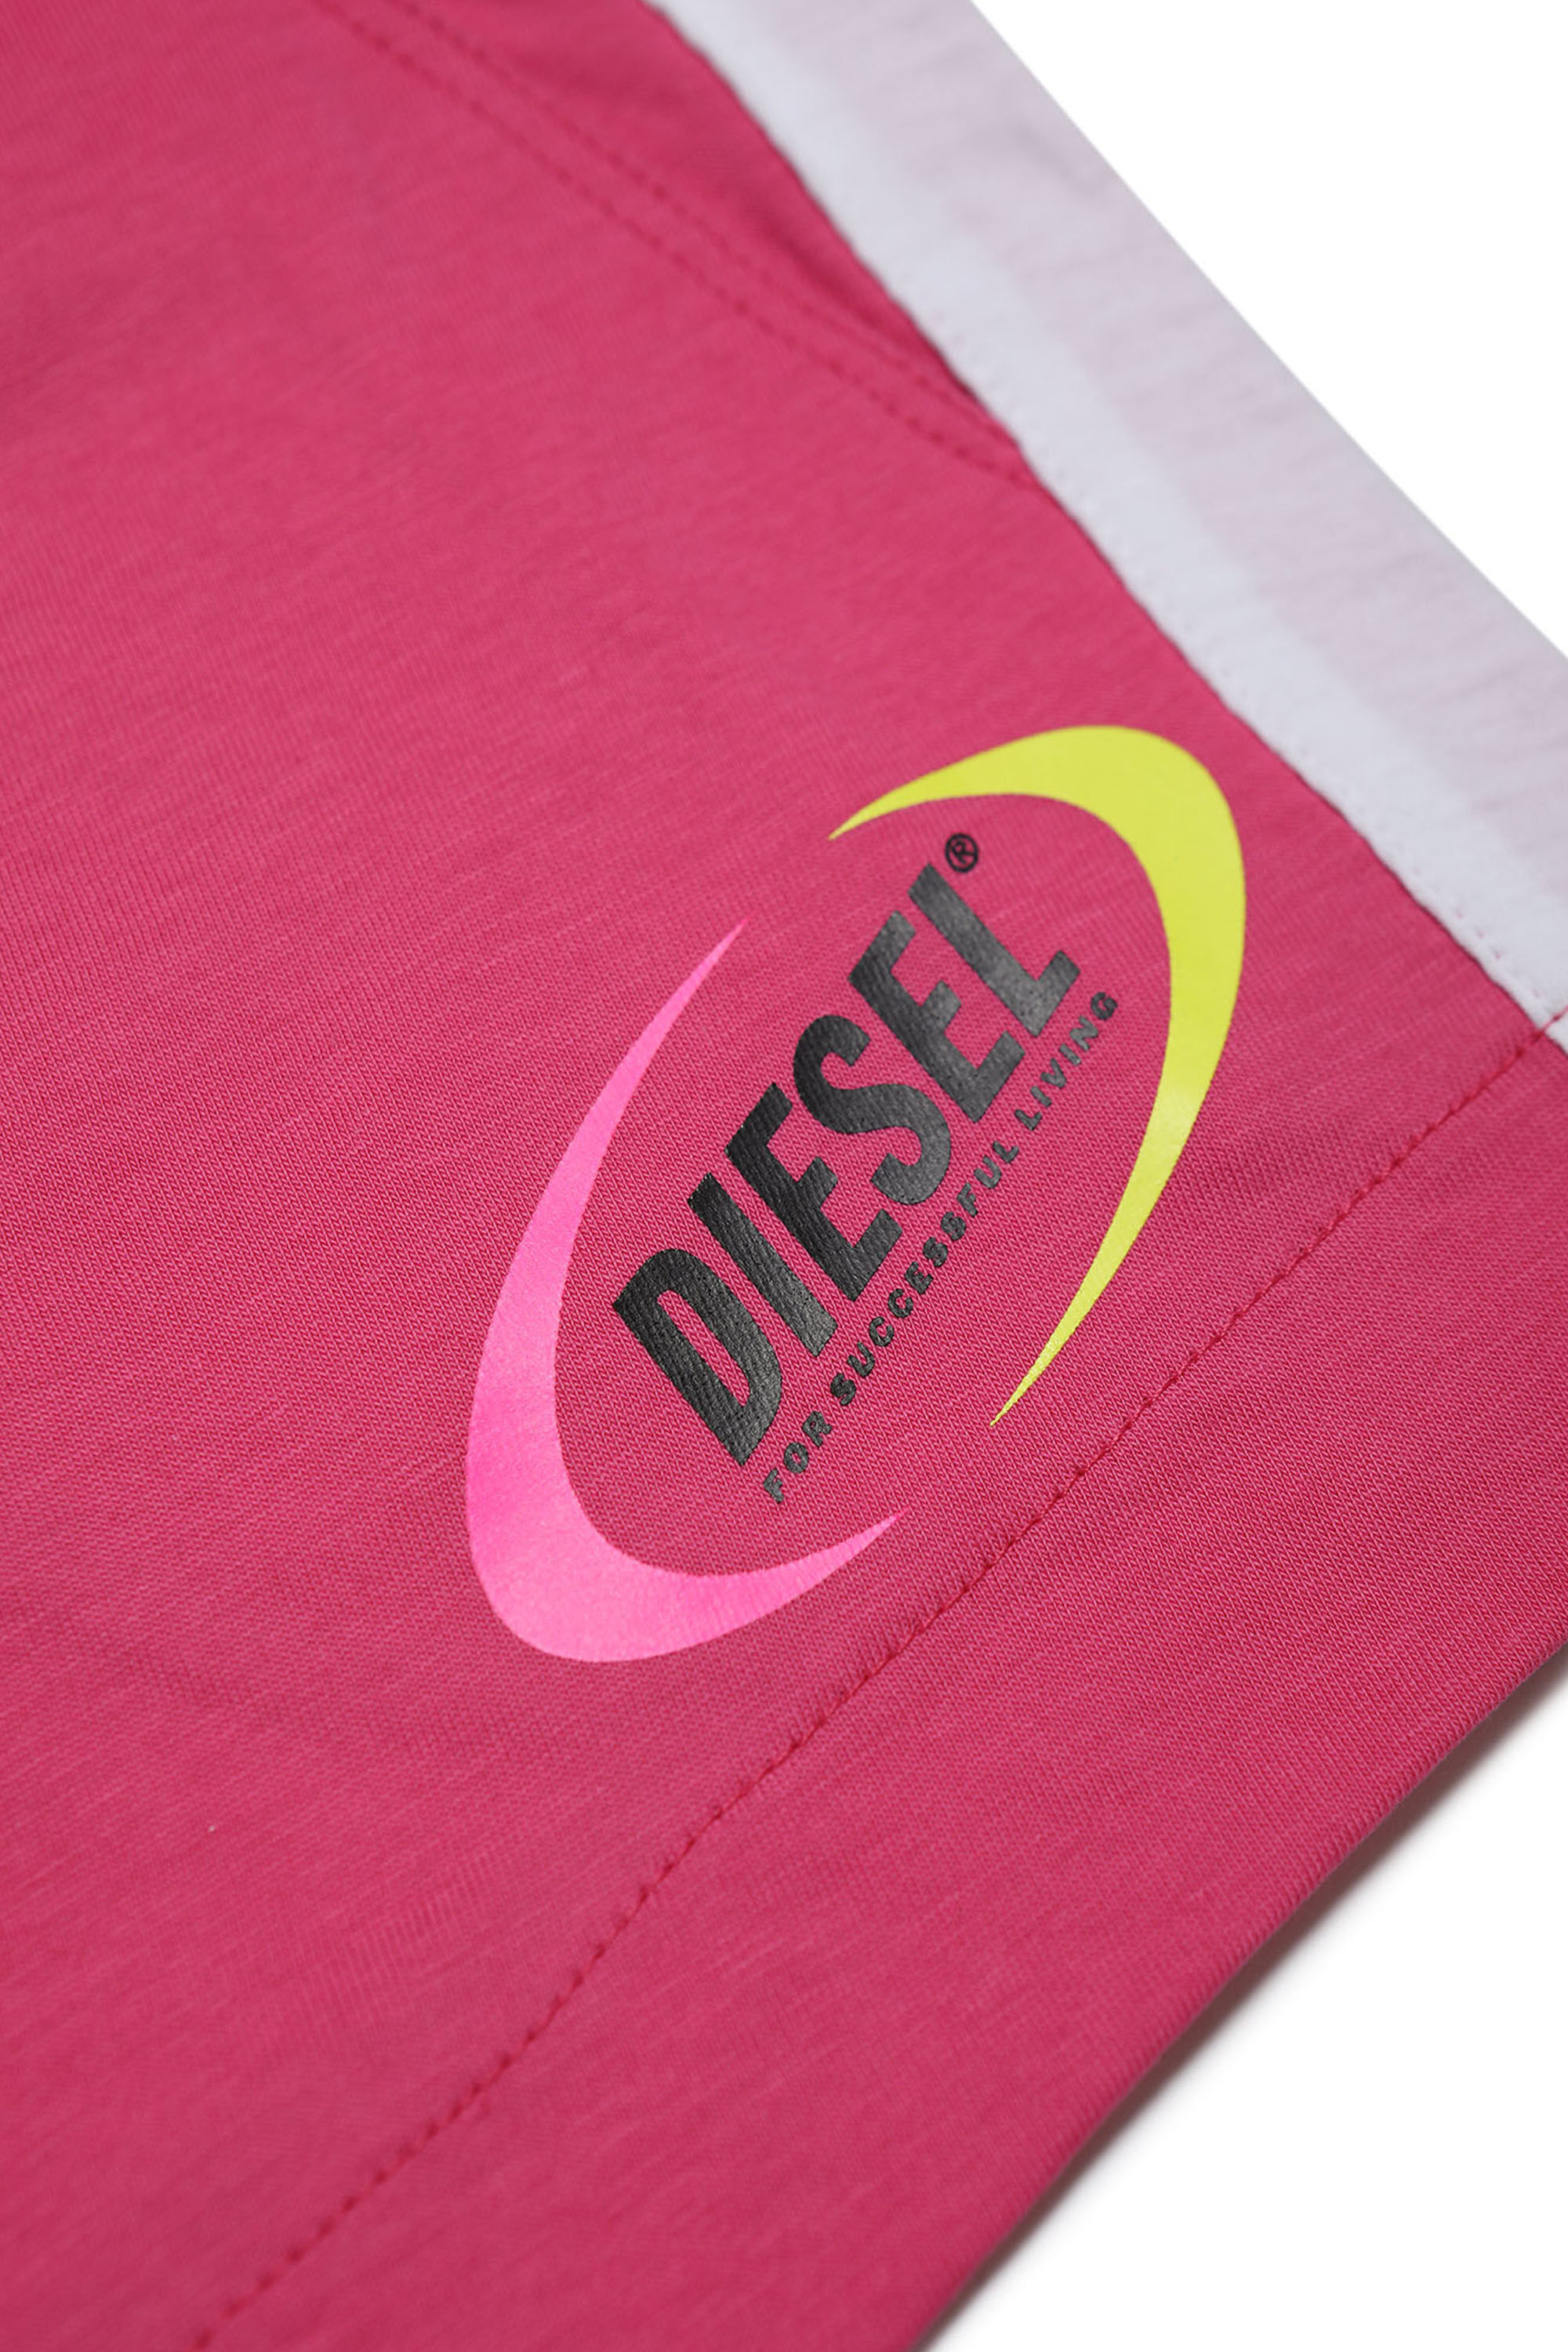 Diesel - MPEPRI, Pink - Image 3